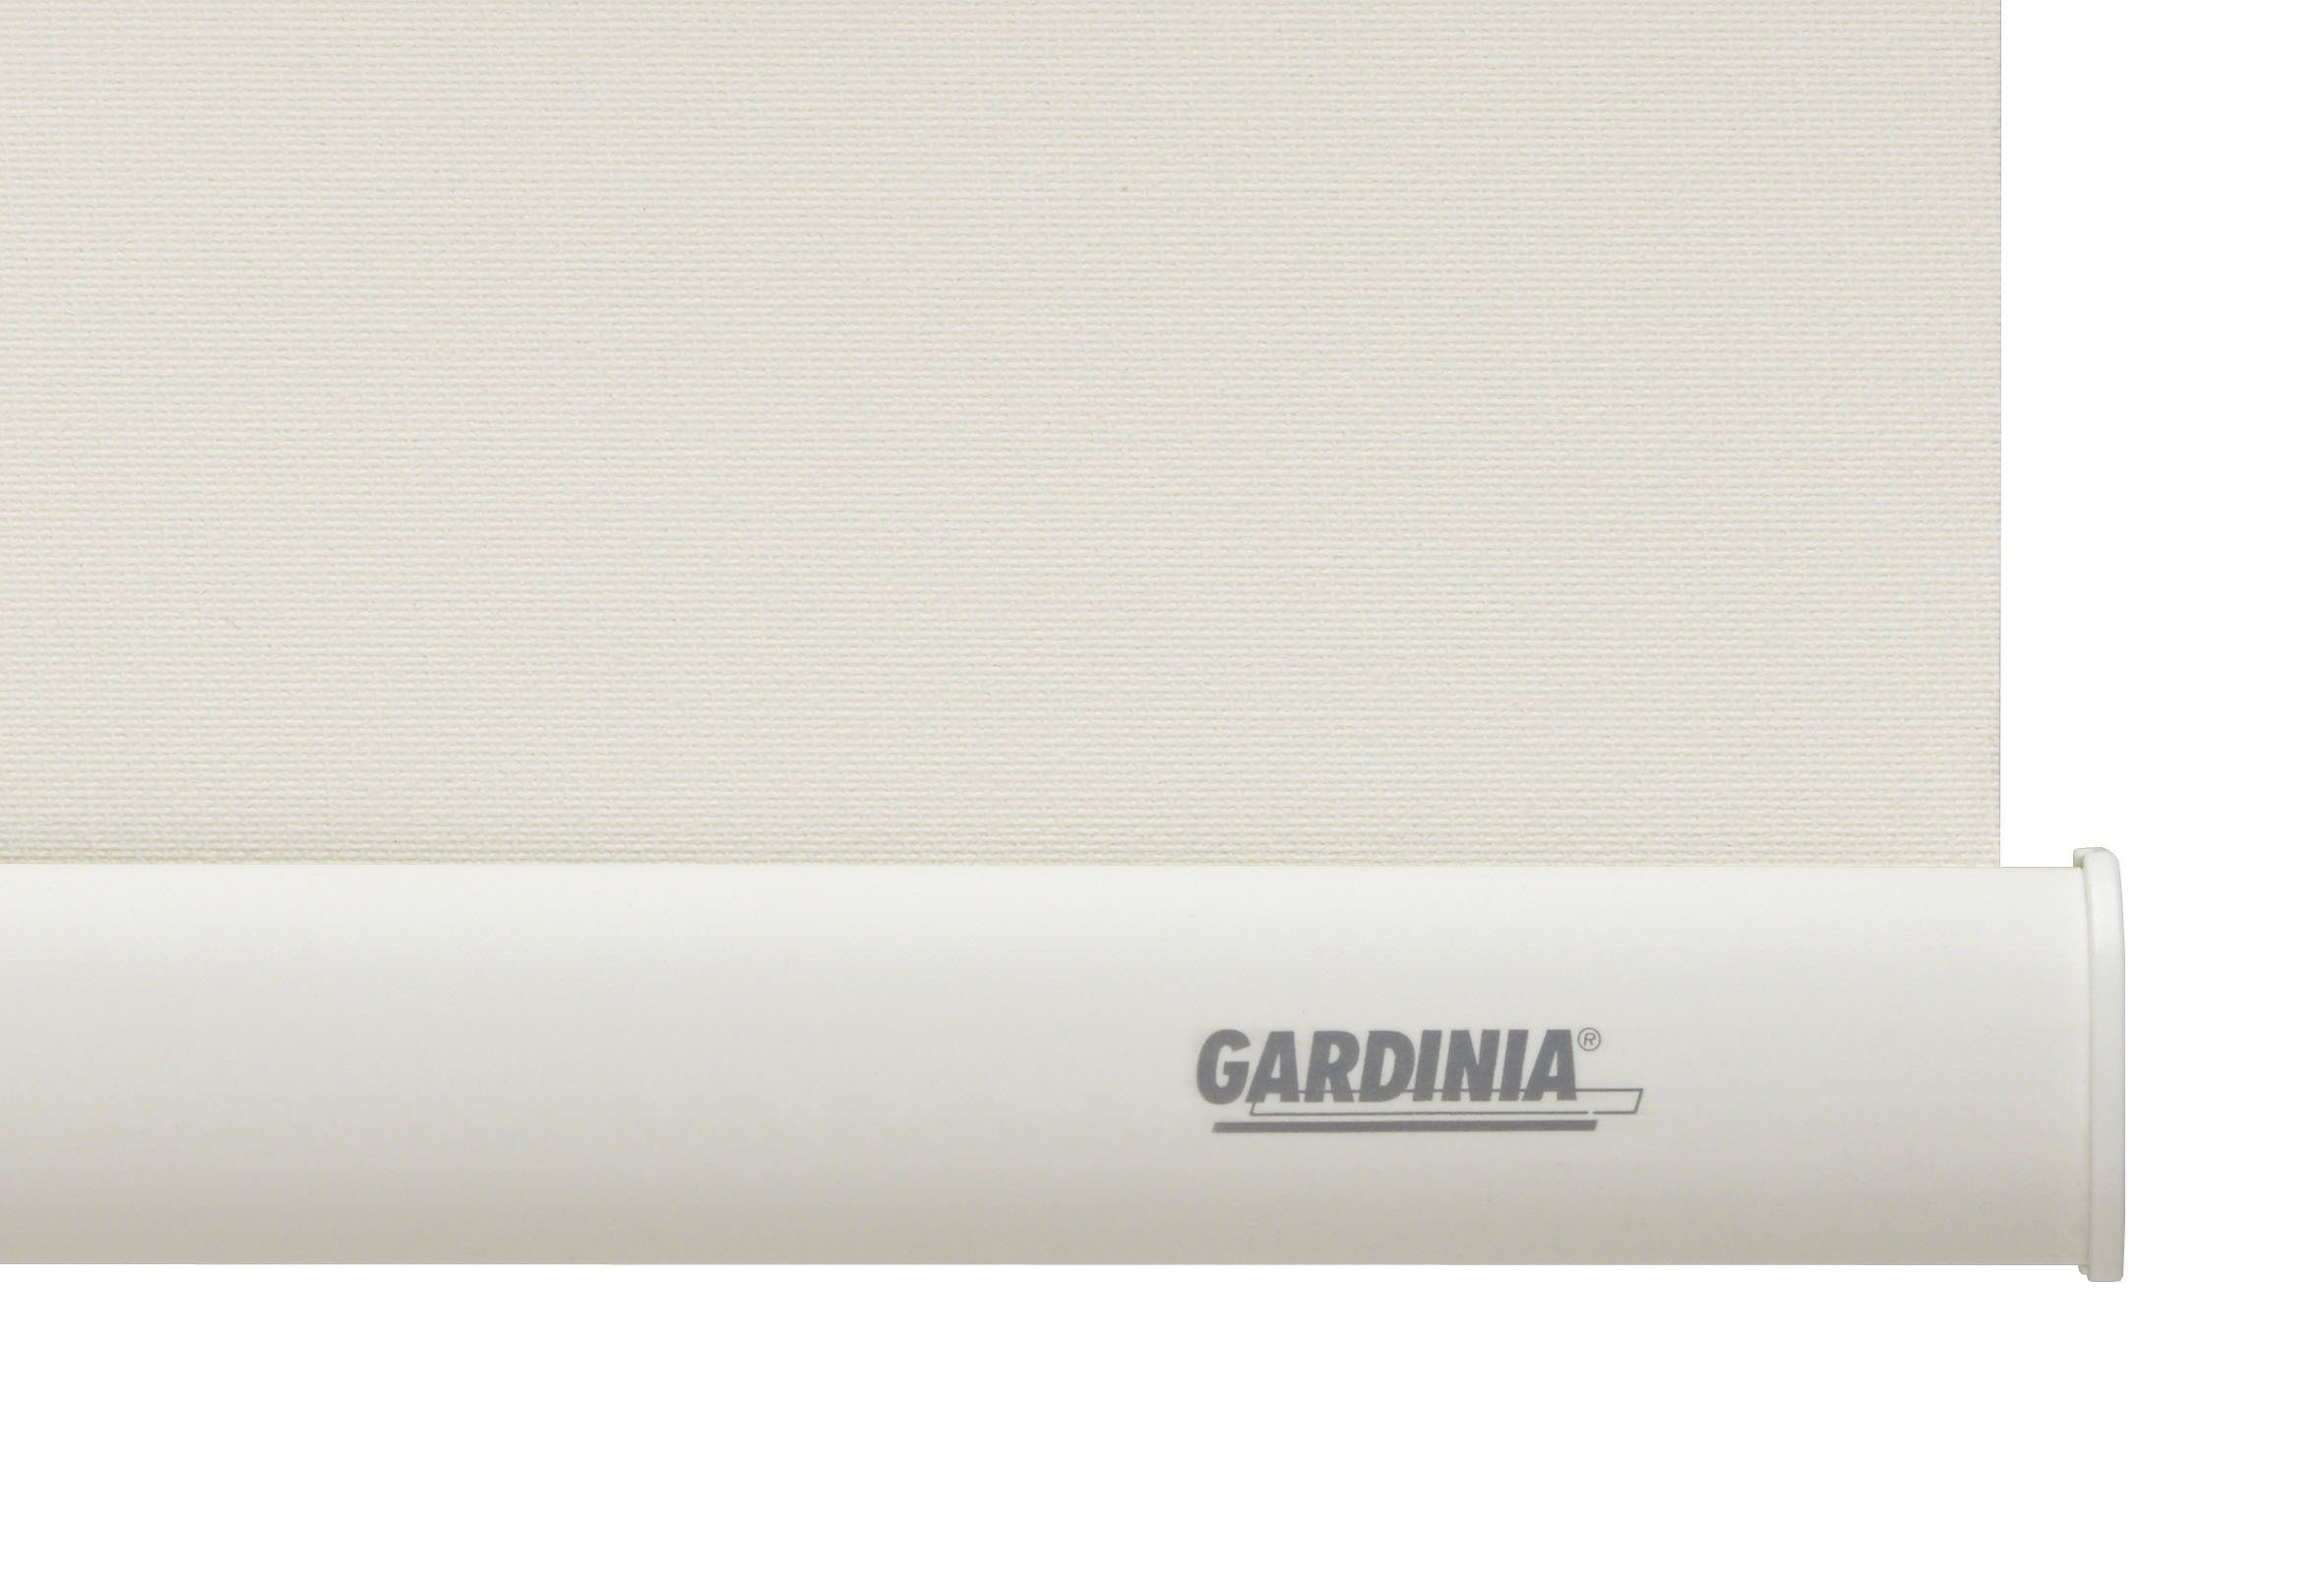 Seitenzugrollo Uni-Rollo - Thermo weiß verschraubt, verdunkelnd, reinweiß Abschlussprofil in GARDINIA, Energiesparend